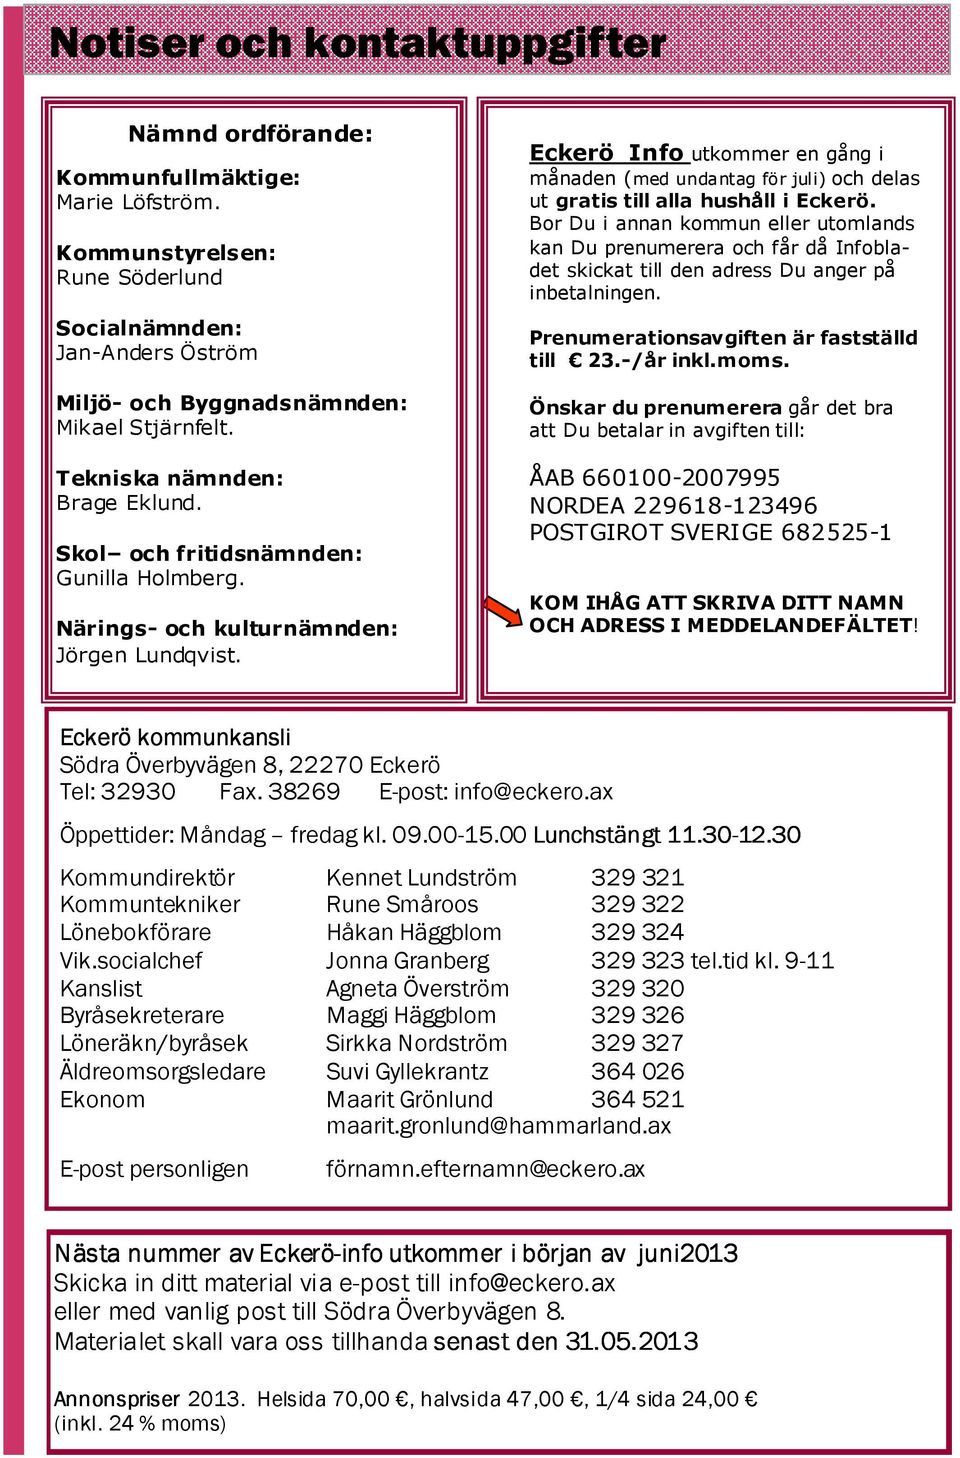 Eckerö Info utkommer en gång i månaden (med undantag för juli) och delas ut gratis till alla hushåll i Eckerö.